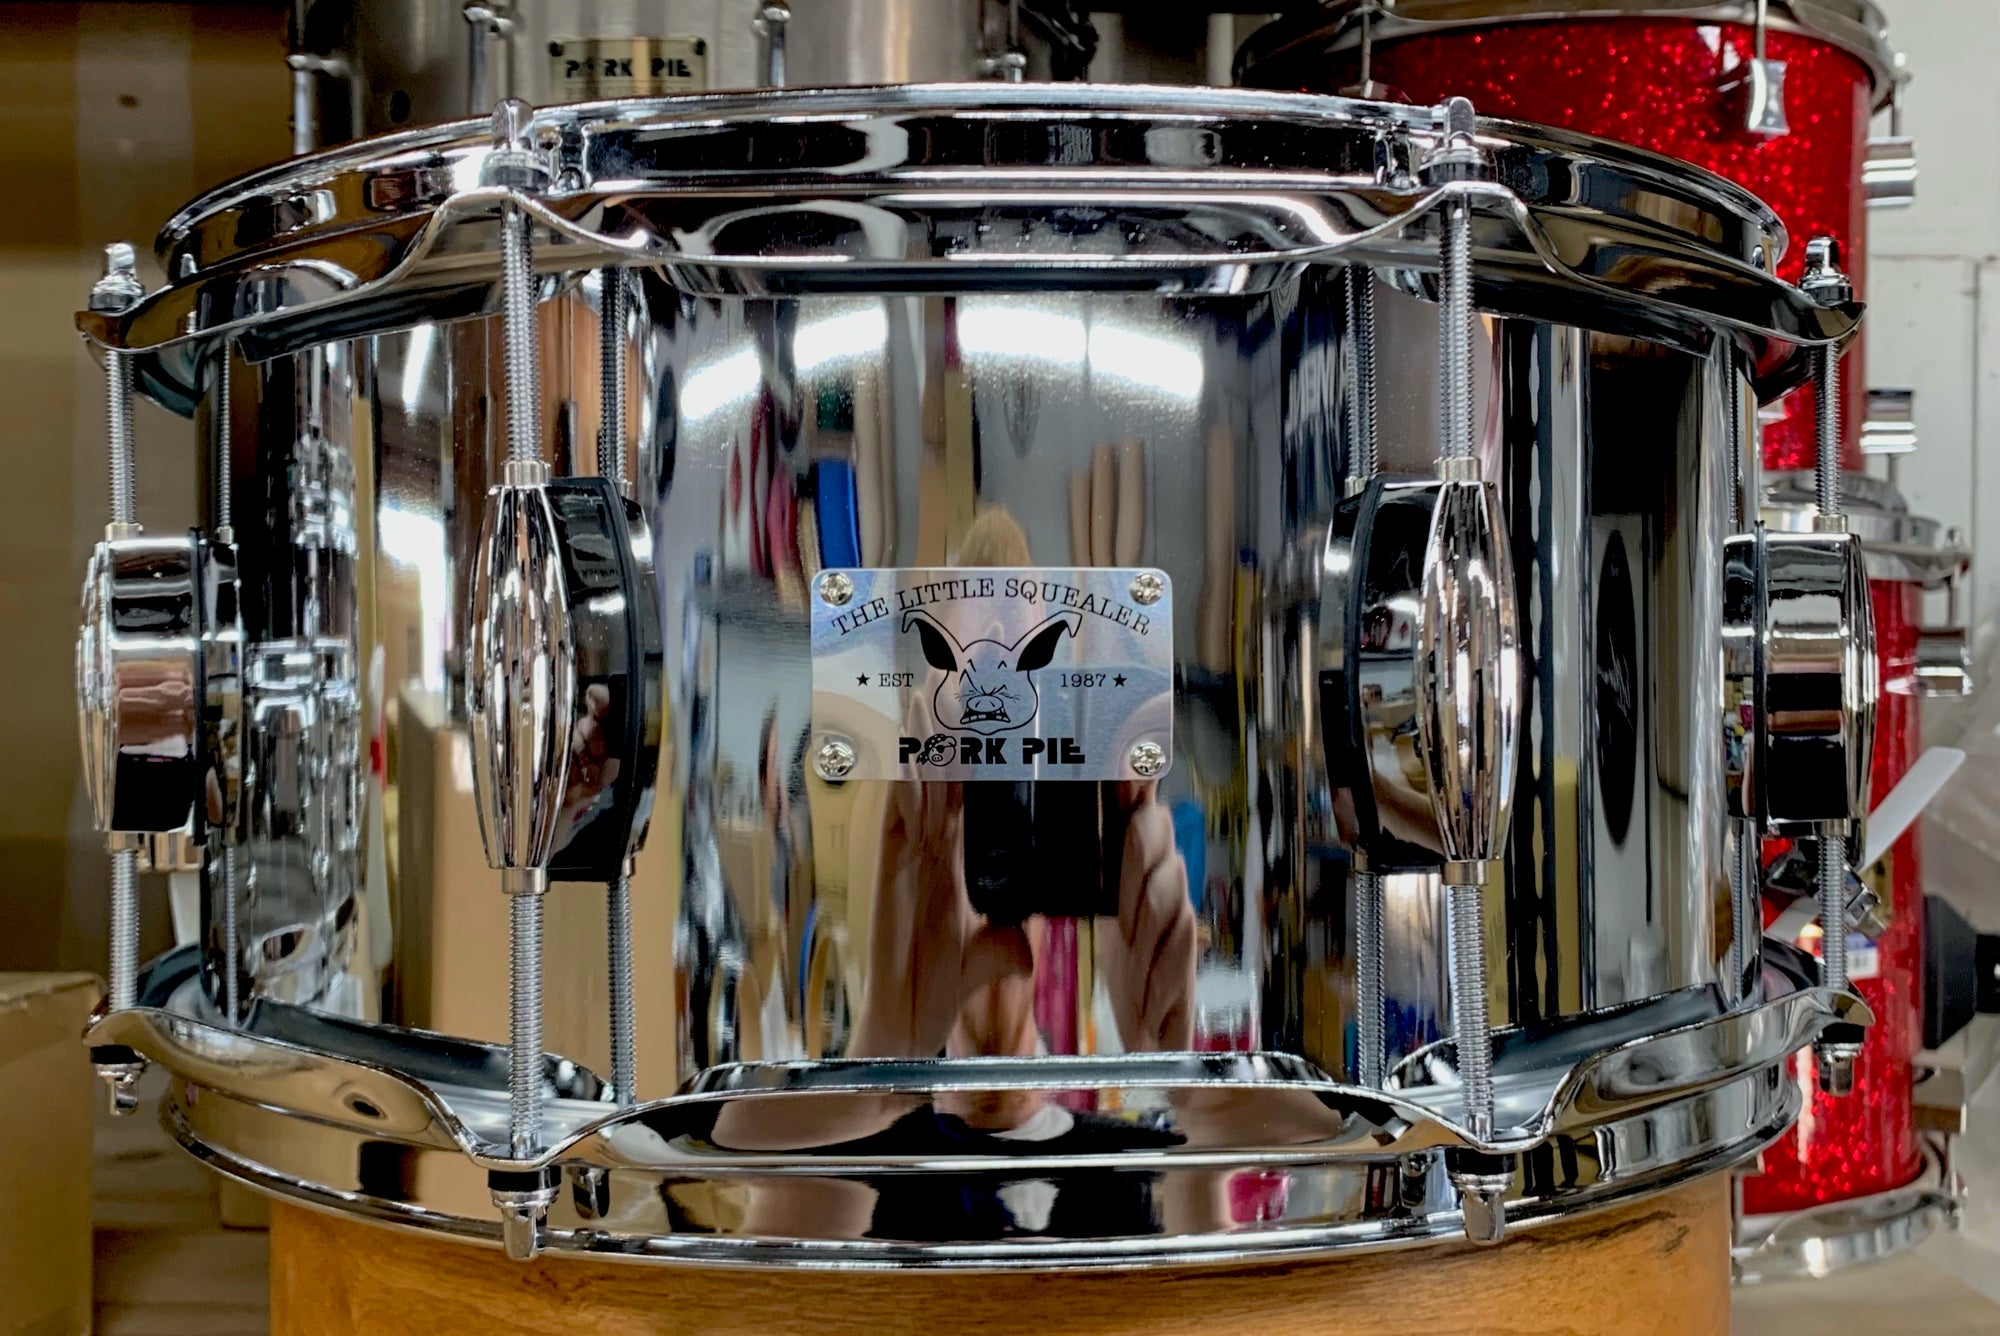 Pork Pie 14x6.5” Little Squealer Steel Snare Drum